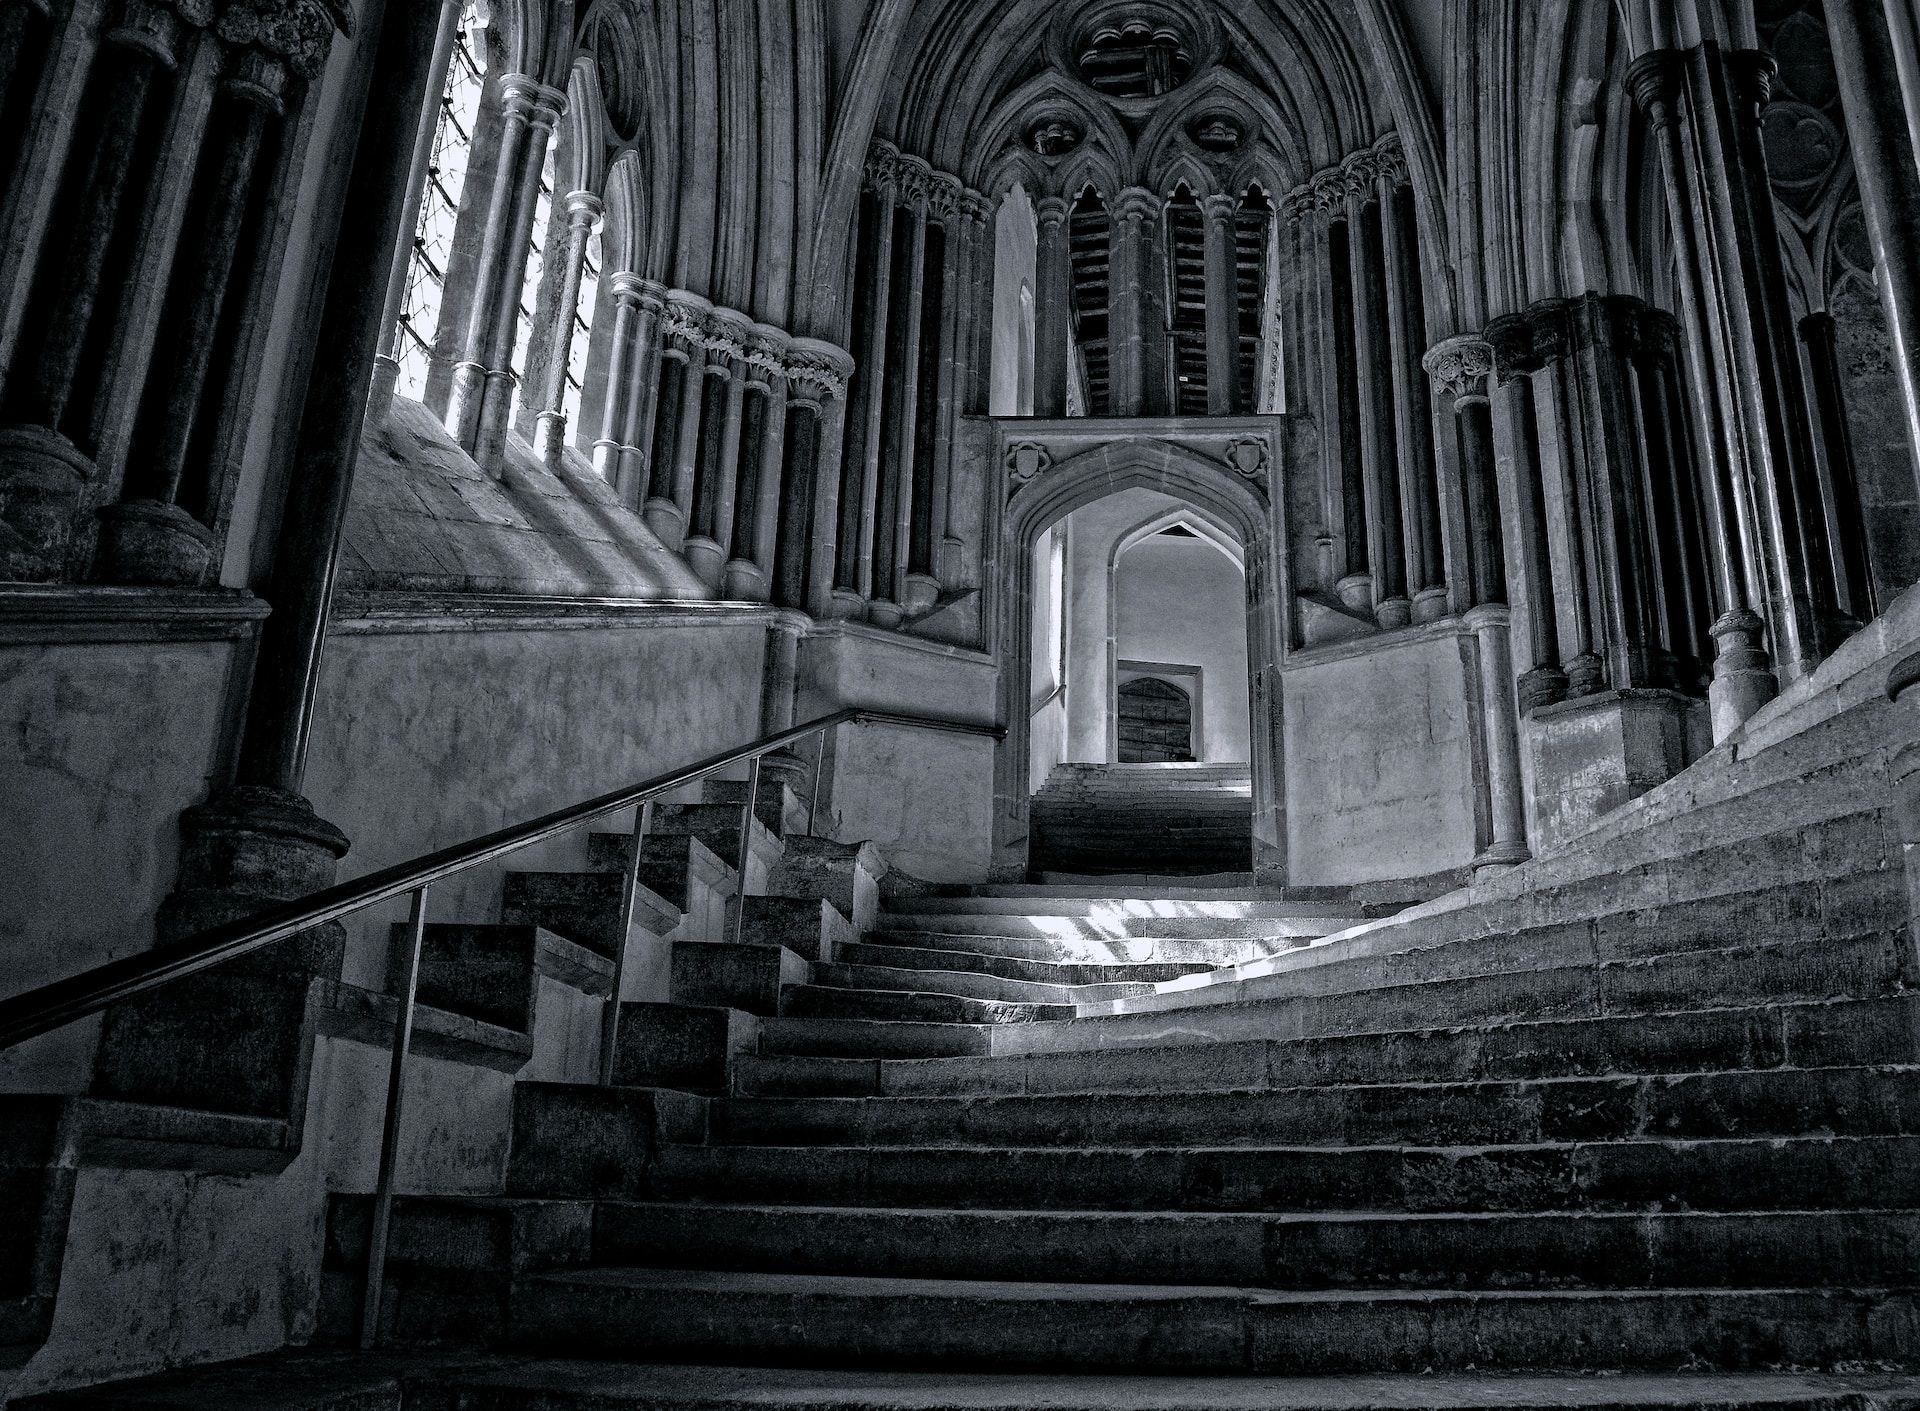 photo noir et blanc de marches d'escalier complexes dans une église ancienne - Photo de David Edkins sur https://unsplash.com/fr/photos/UxTV7DzuiyE